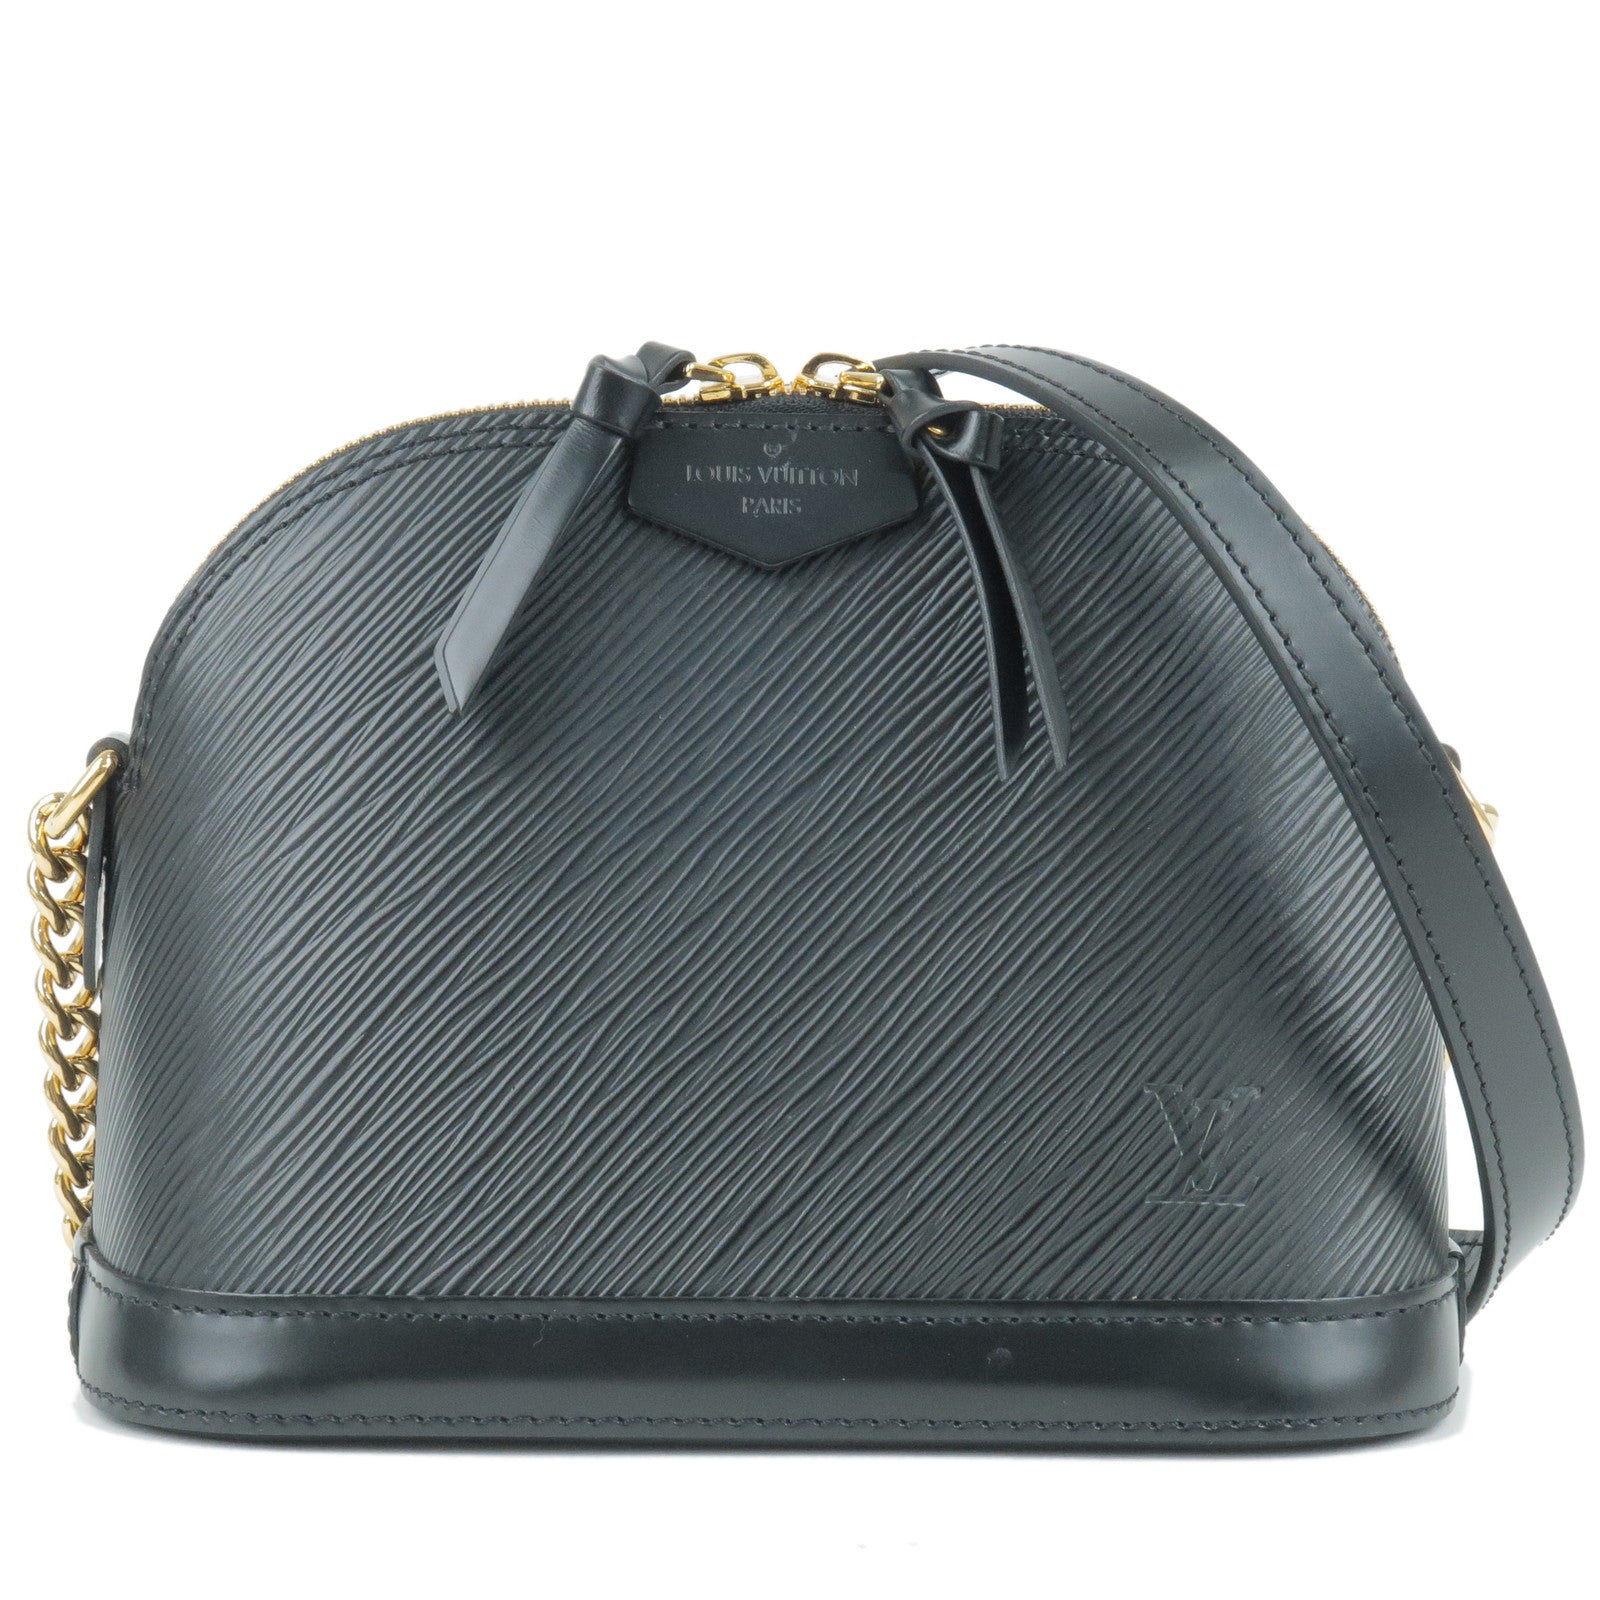 Louis Vuitton vintage black Epi Alma PM bag .. excellent condition like new  ..